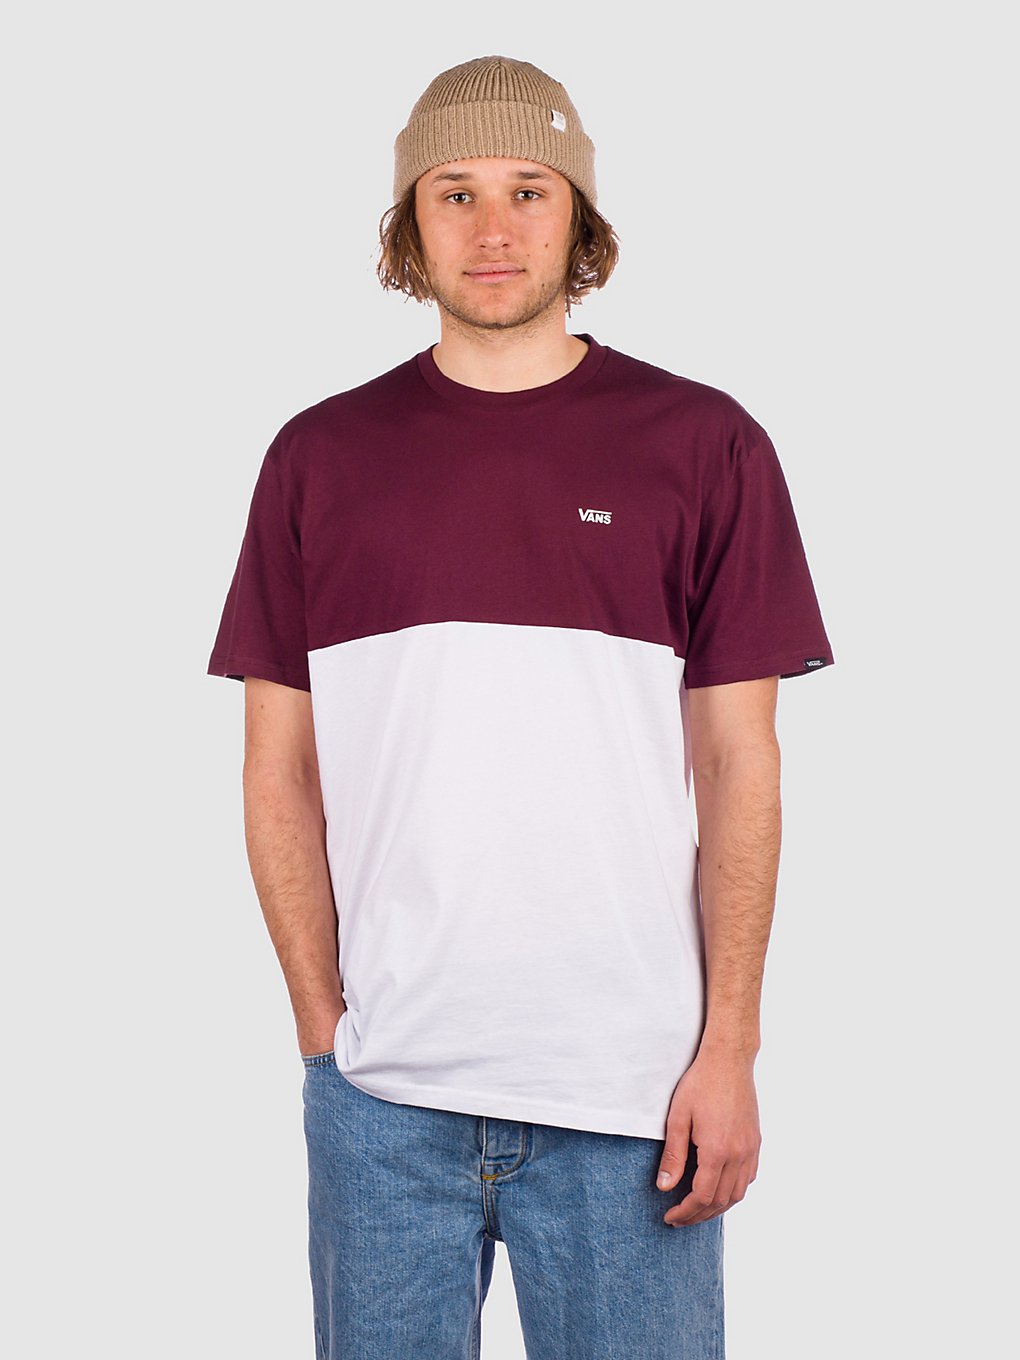 Vans Colorblock T-Shirt wit